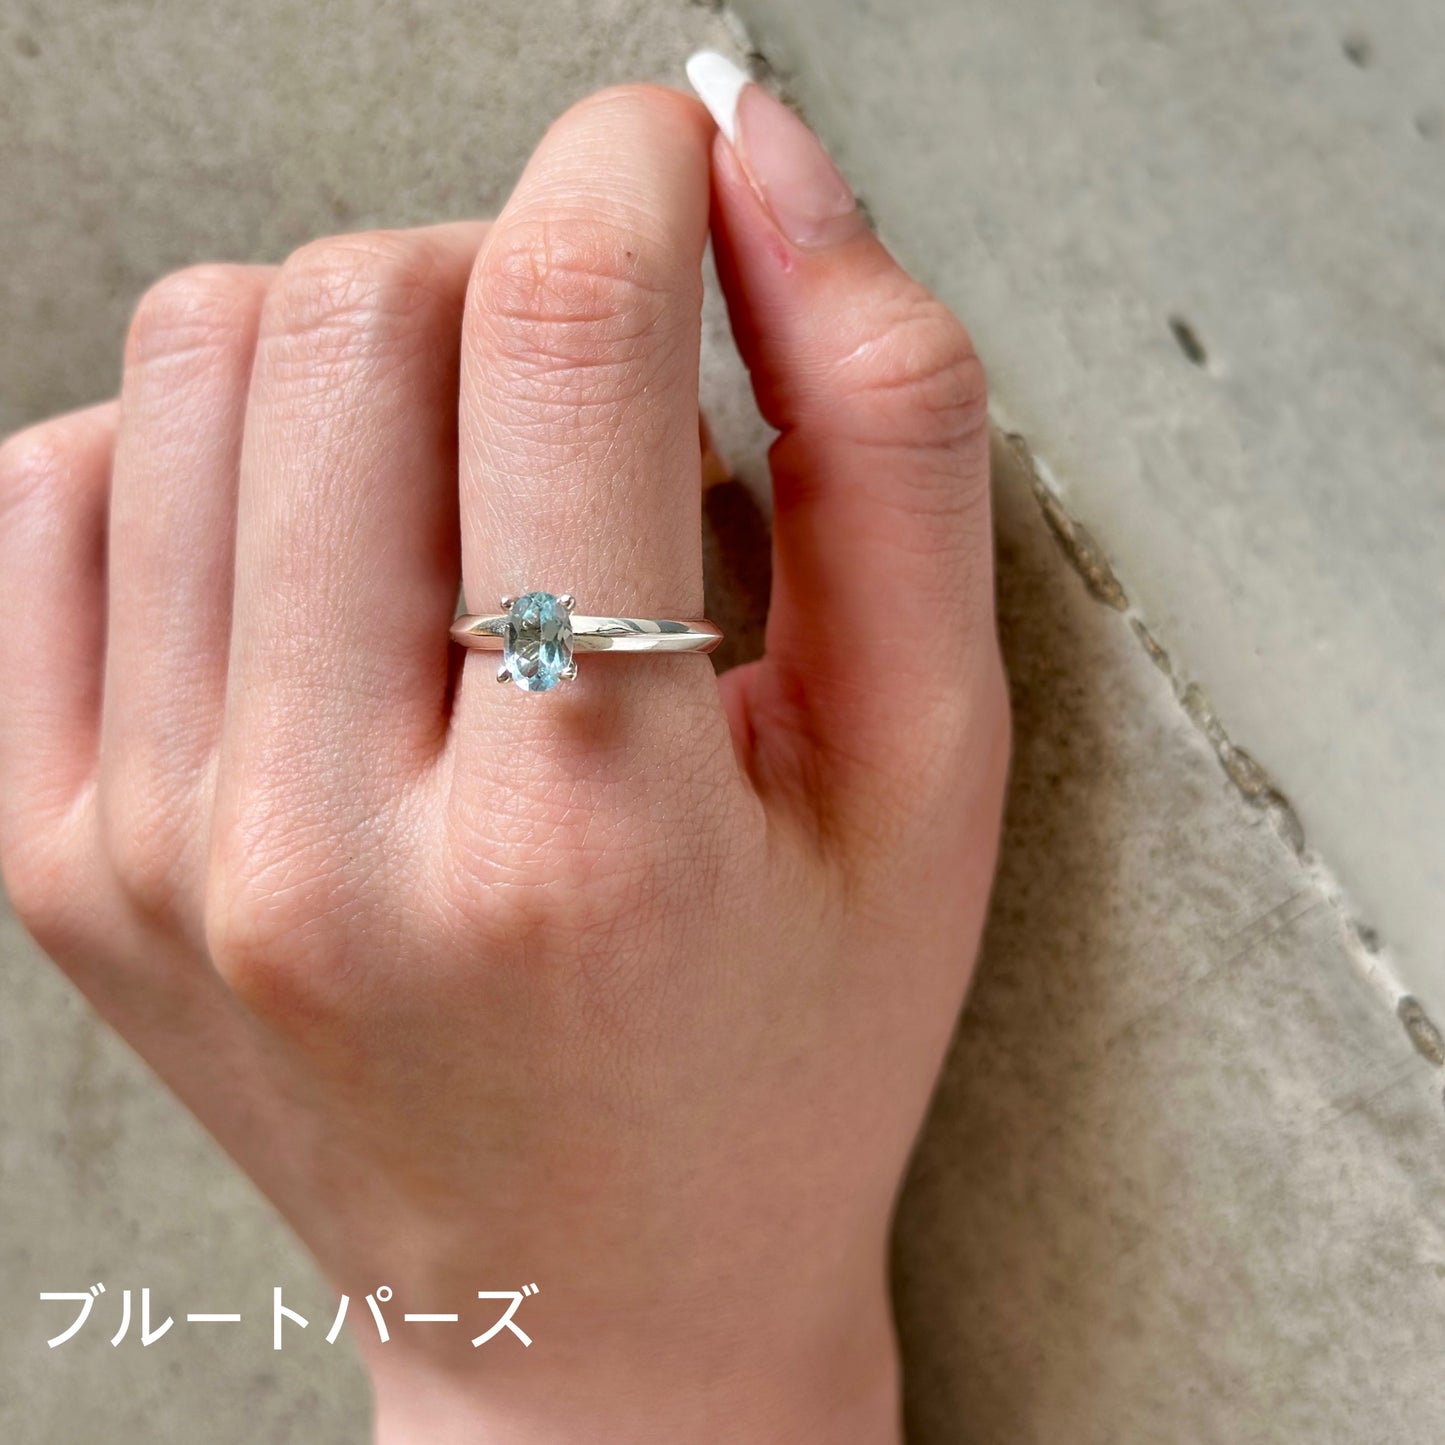 Silver925 tatezume ring